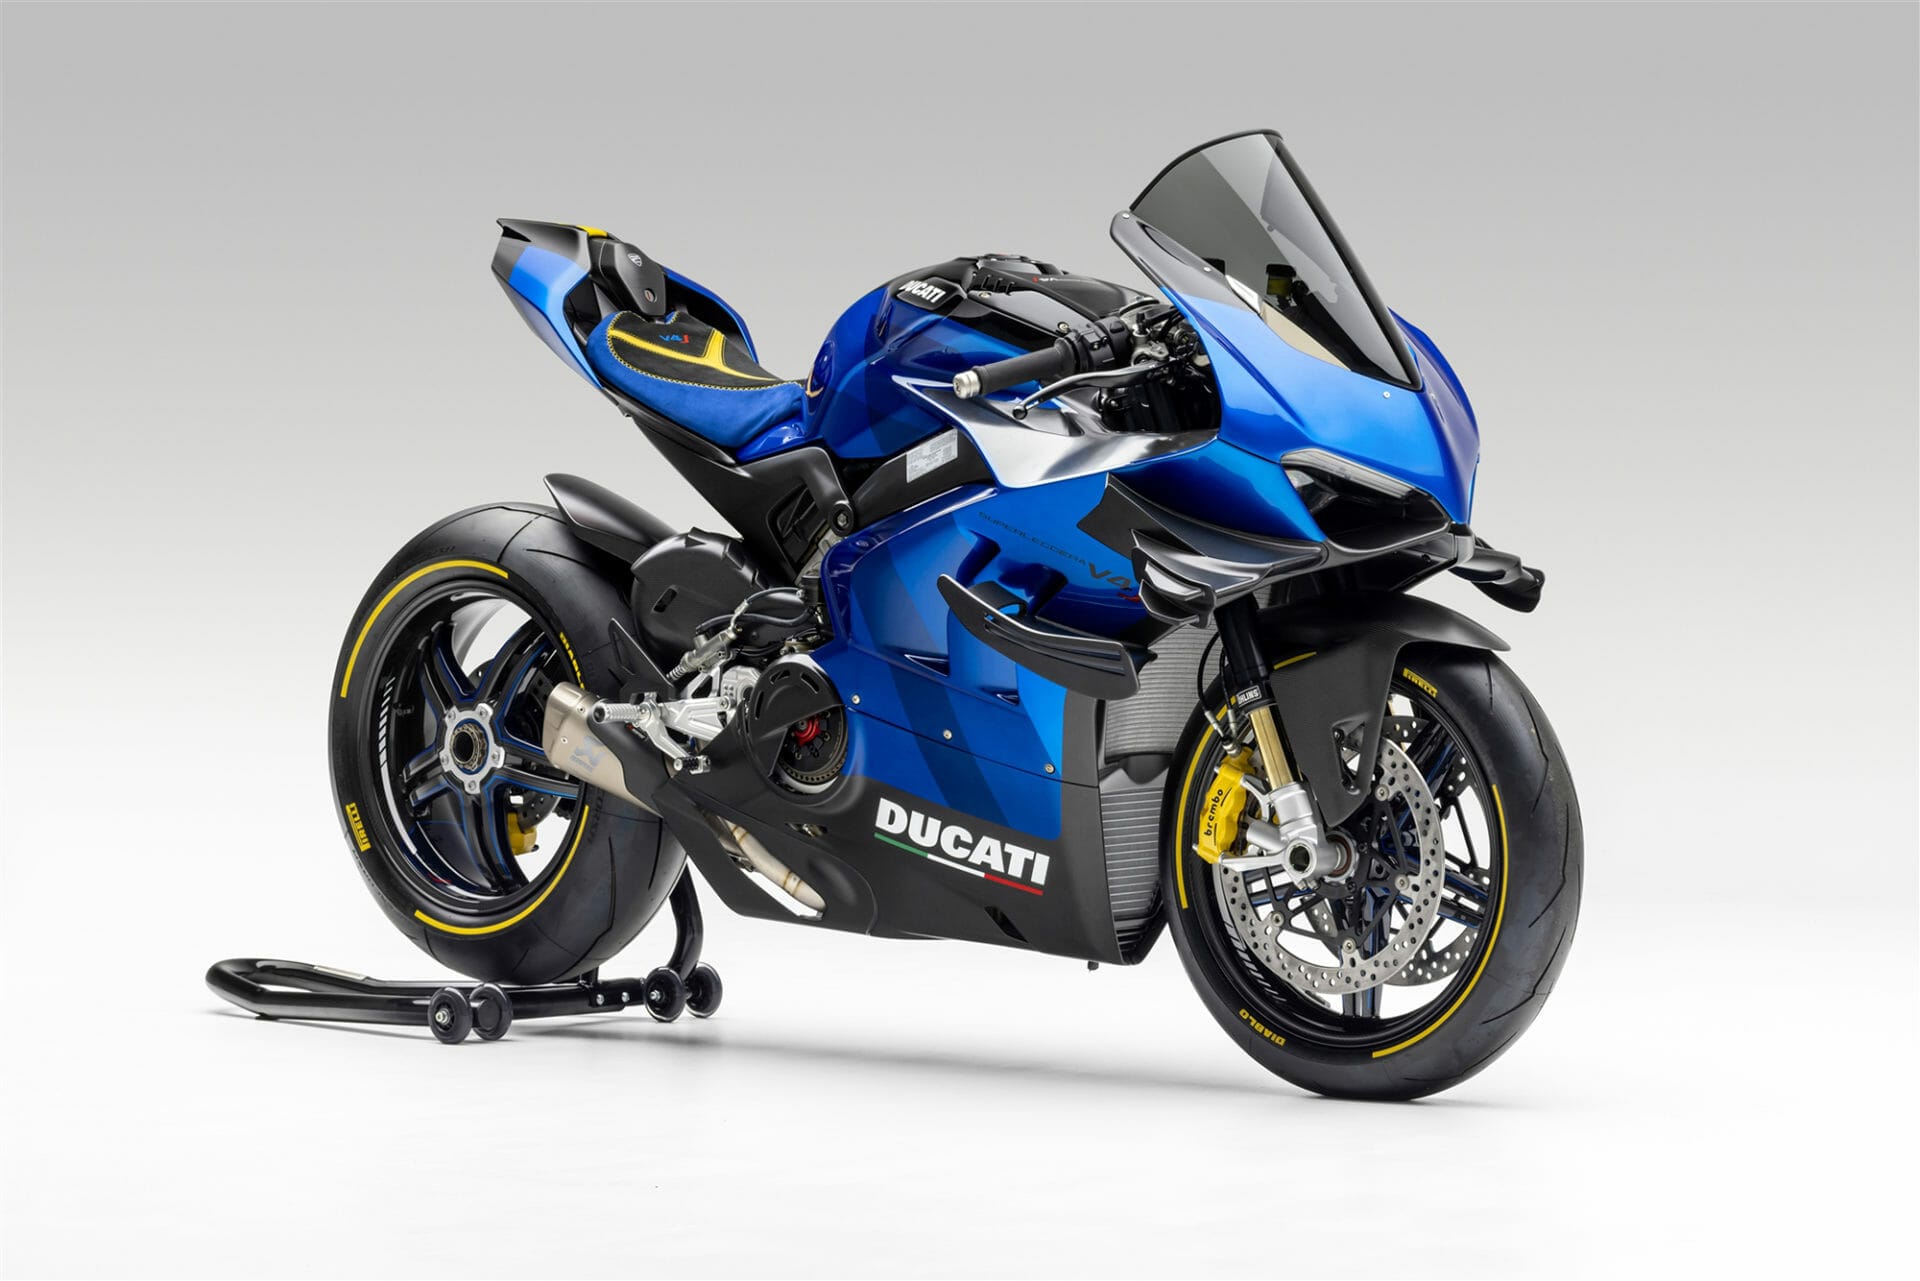 Ducati Unica Programm – Einzigartige Ducatis
- auch in der MOTORRAD NACHRICHTEN APP